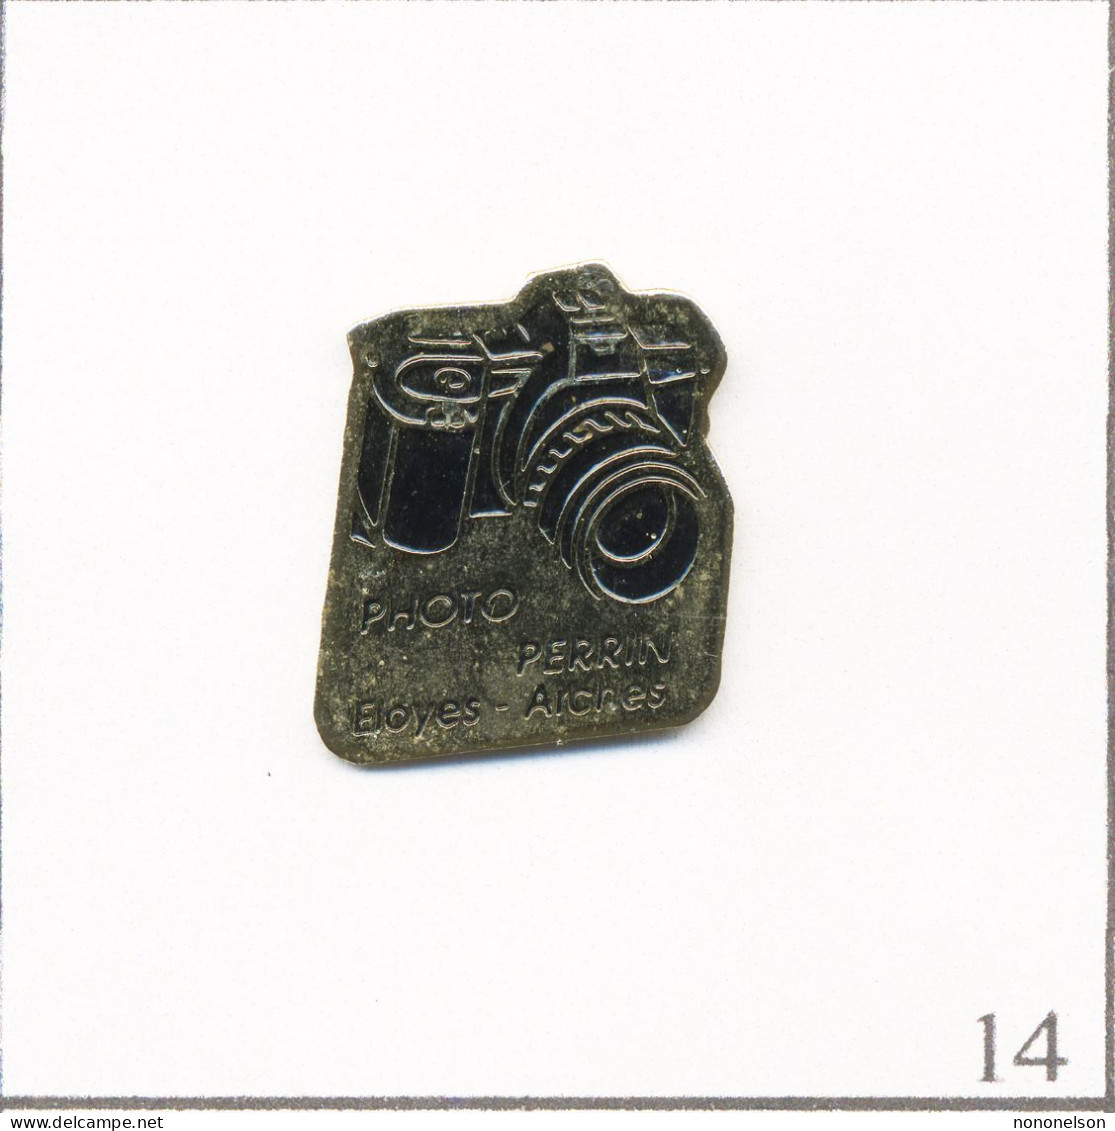 Pin's Photographie - Magasin / Photo Perrin à Eloyes & Arches (88). Estampillé PubliNancy. Métal Peint. T667-14 - Photography